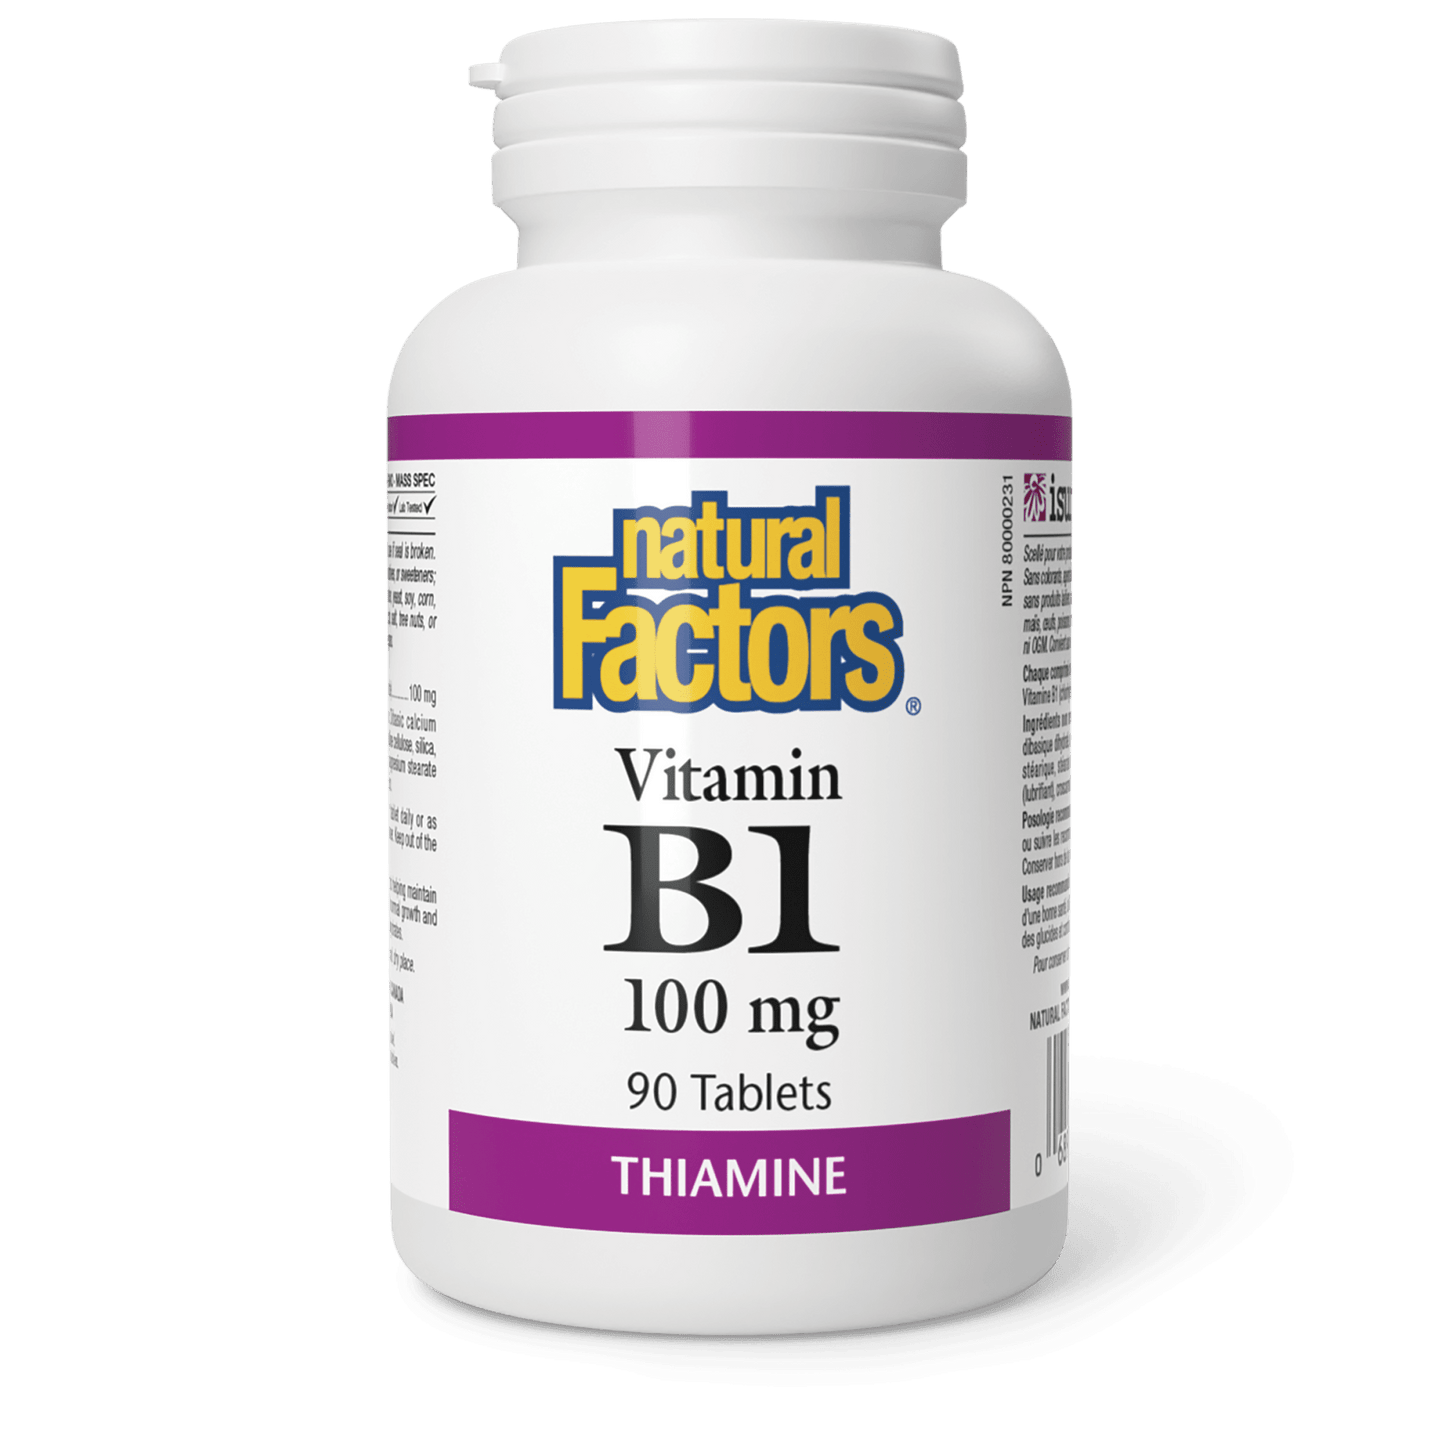 Vitamin B1 100 mg, Natural Factors|v|image|1200